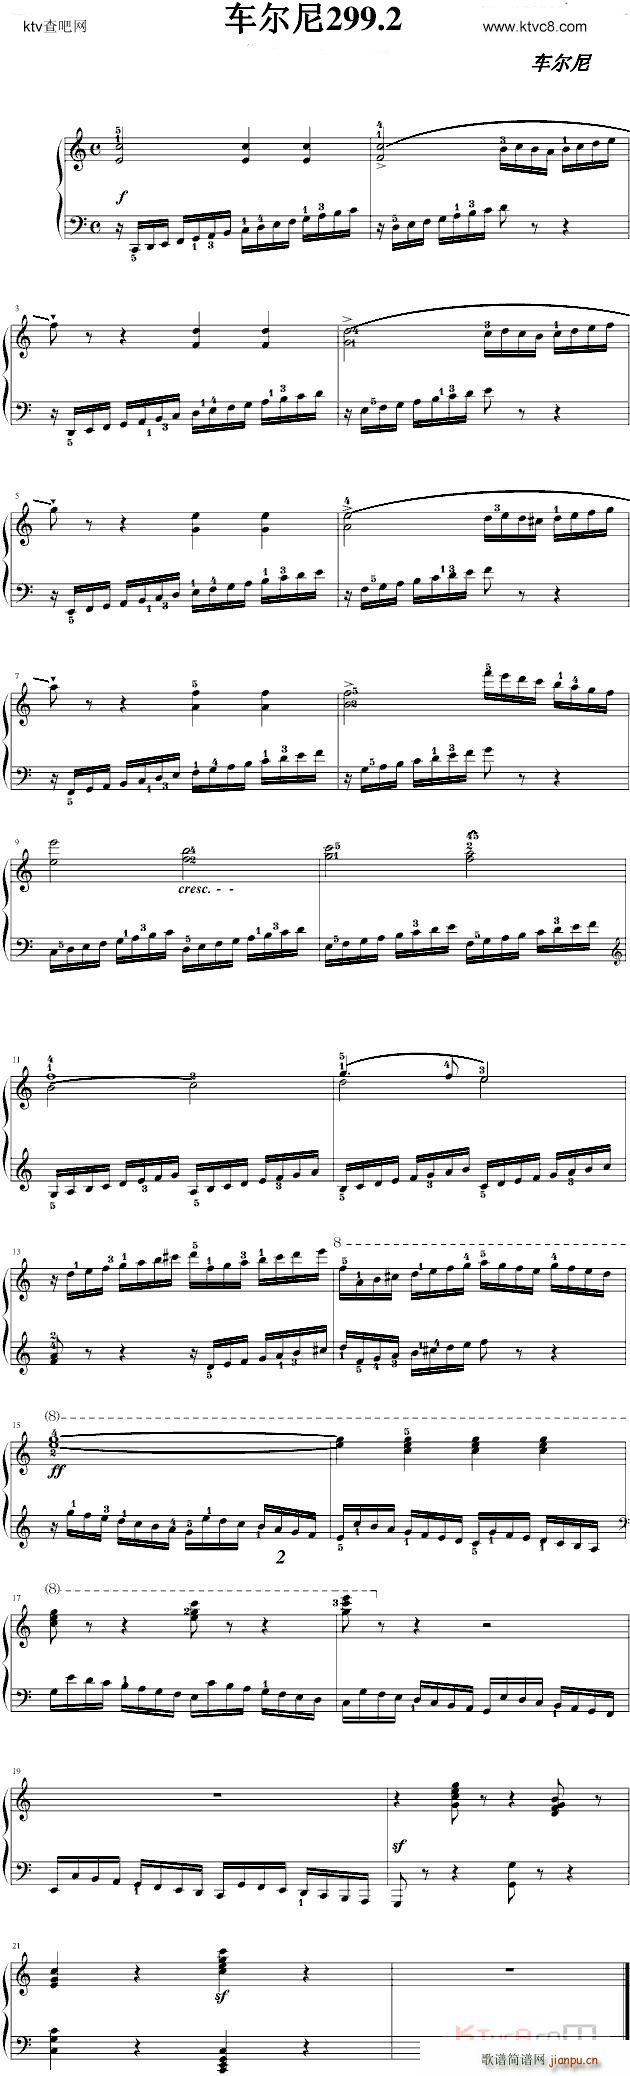 练习曲299 2(钢琴谱)1